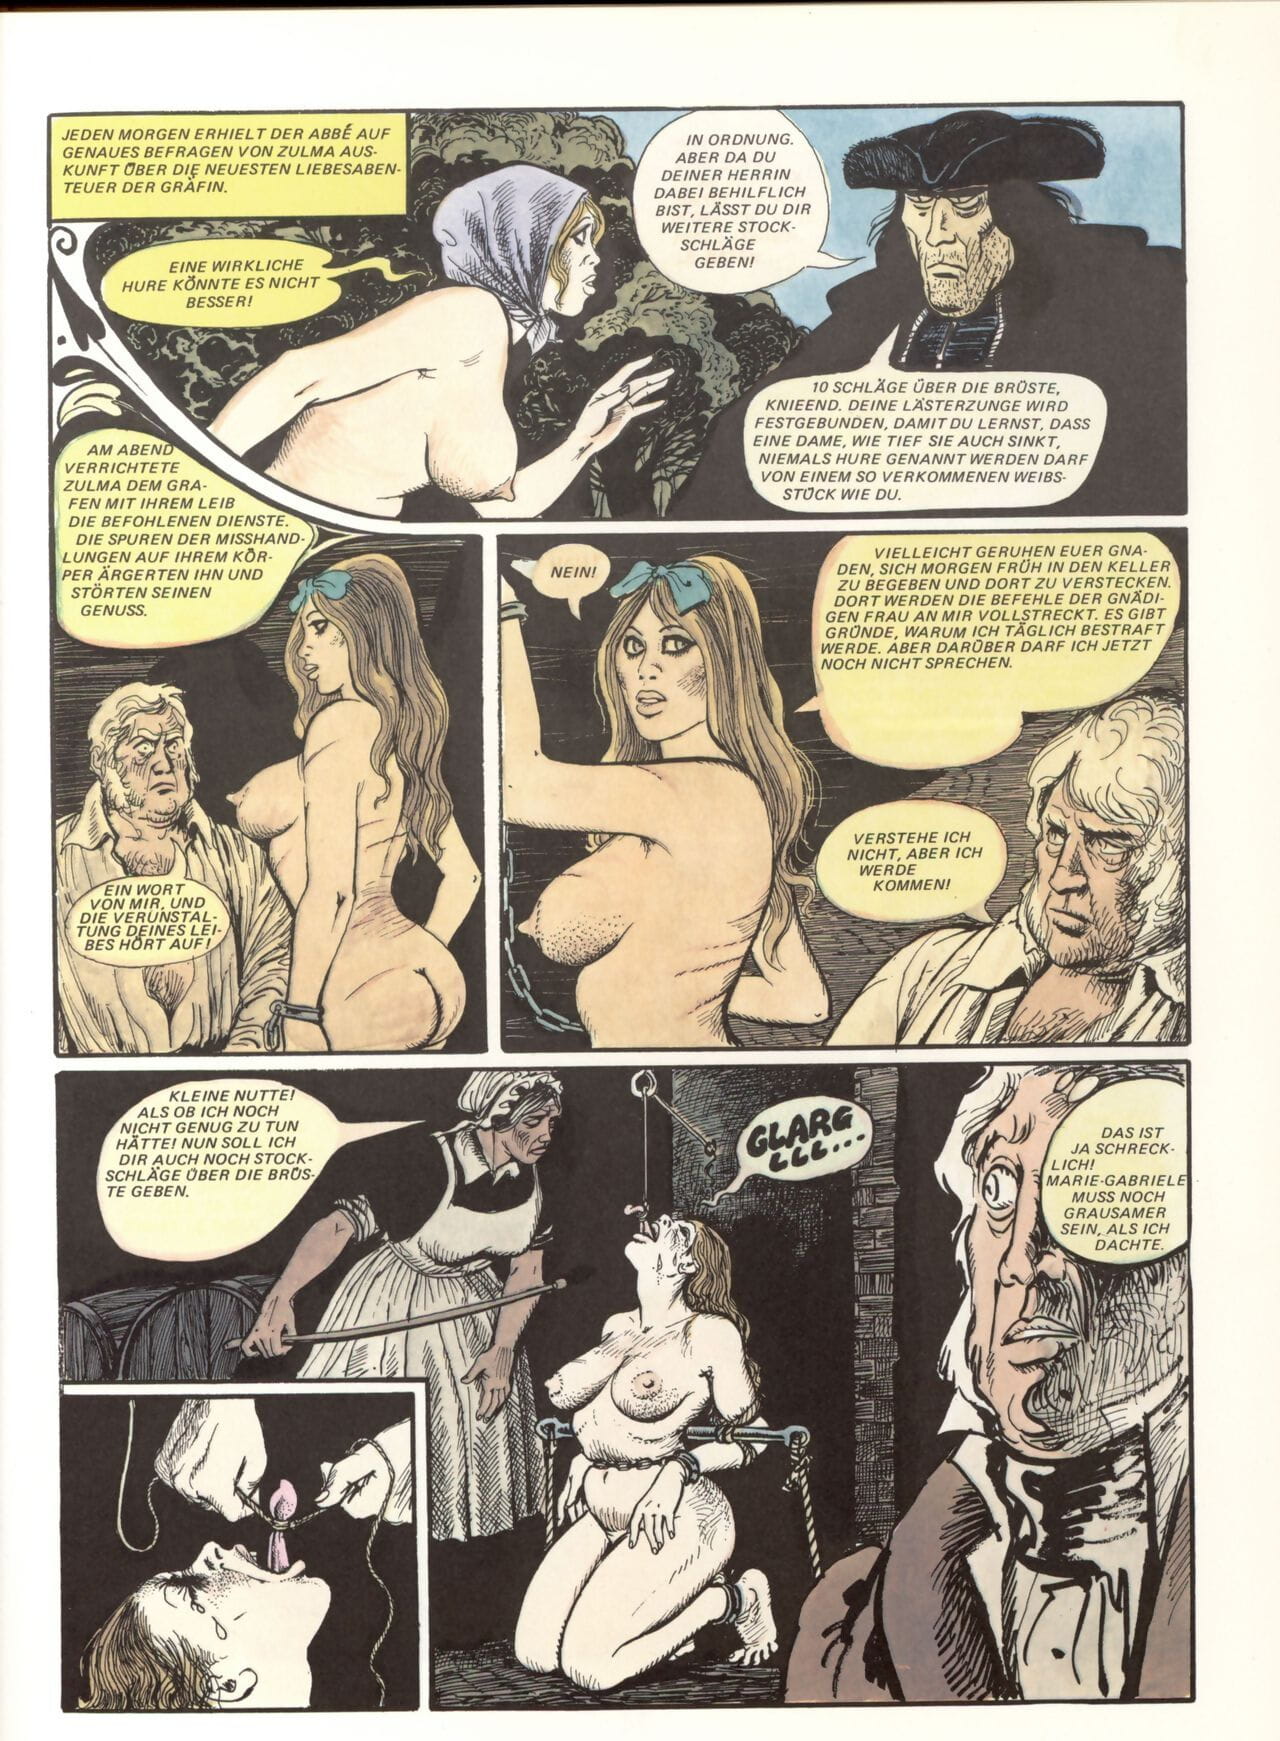 Marie Gabrielle De Saint eutrope #02 page 1